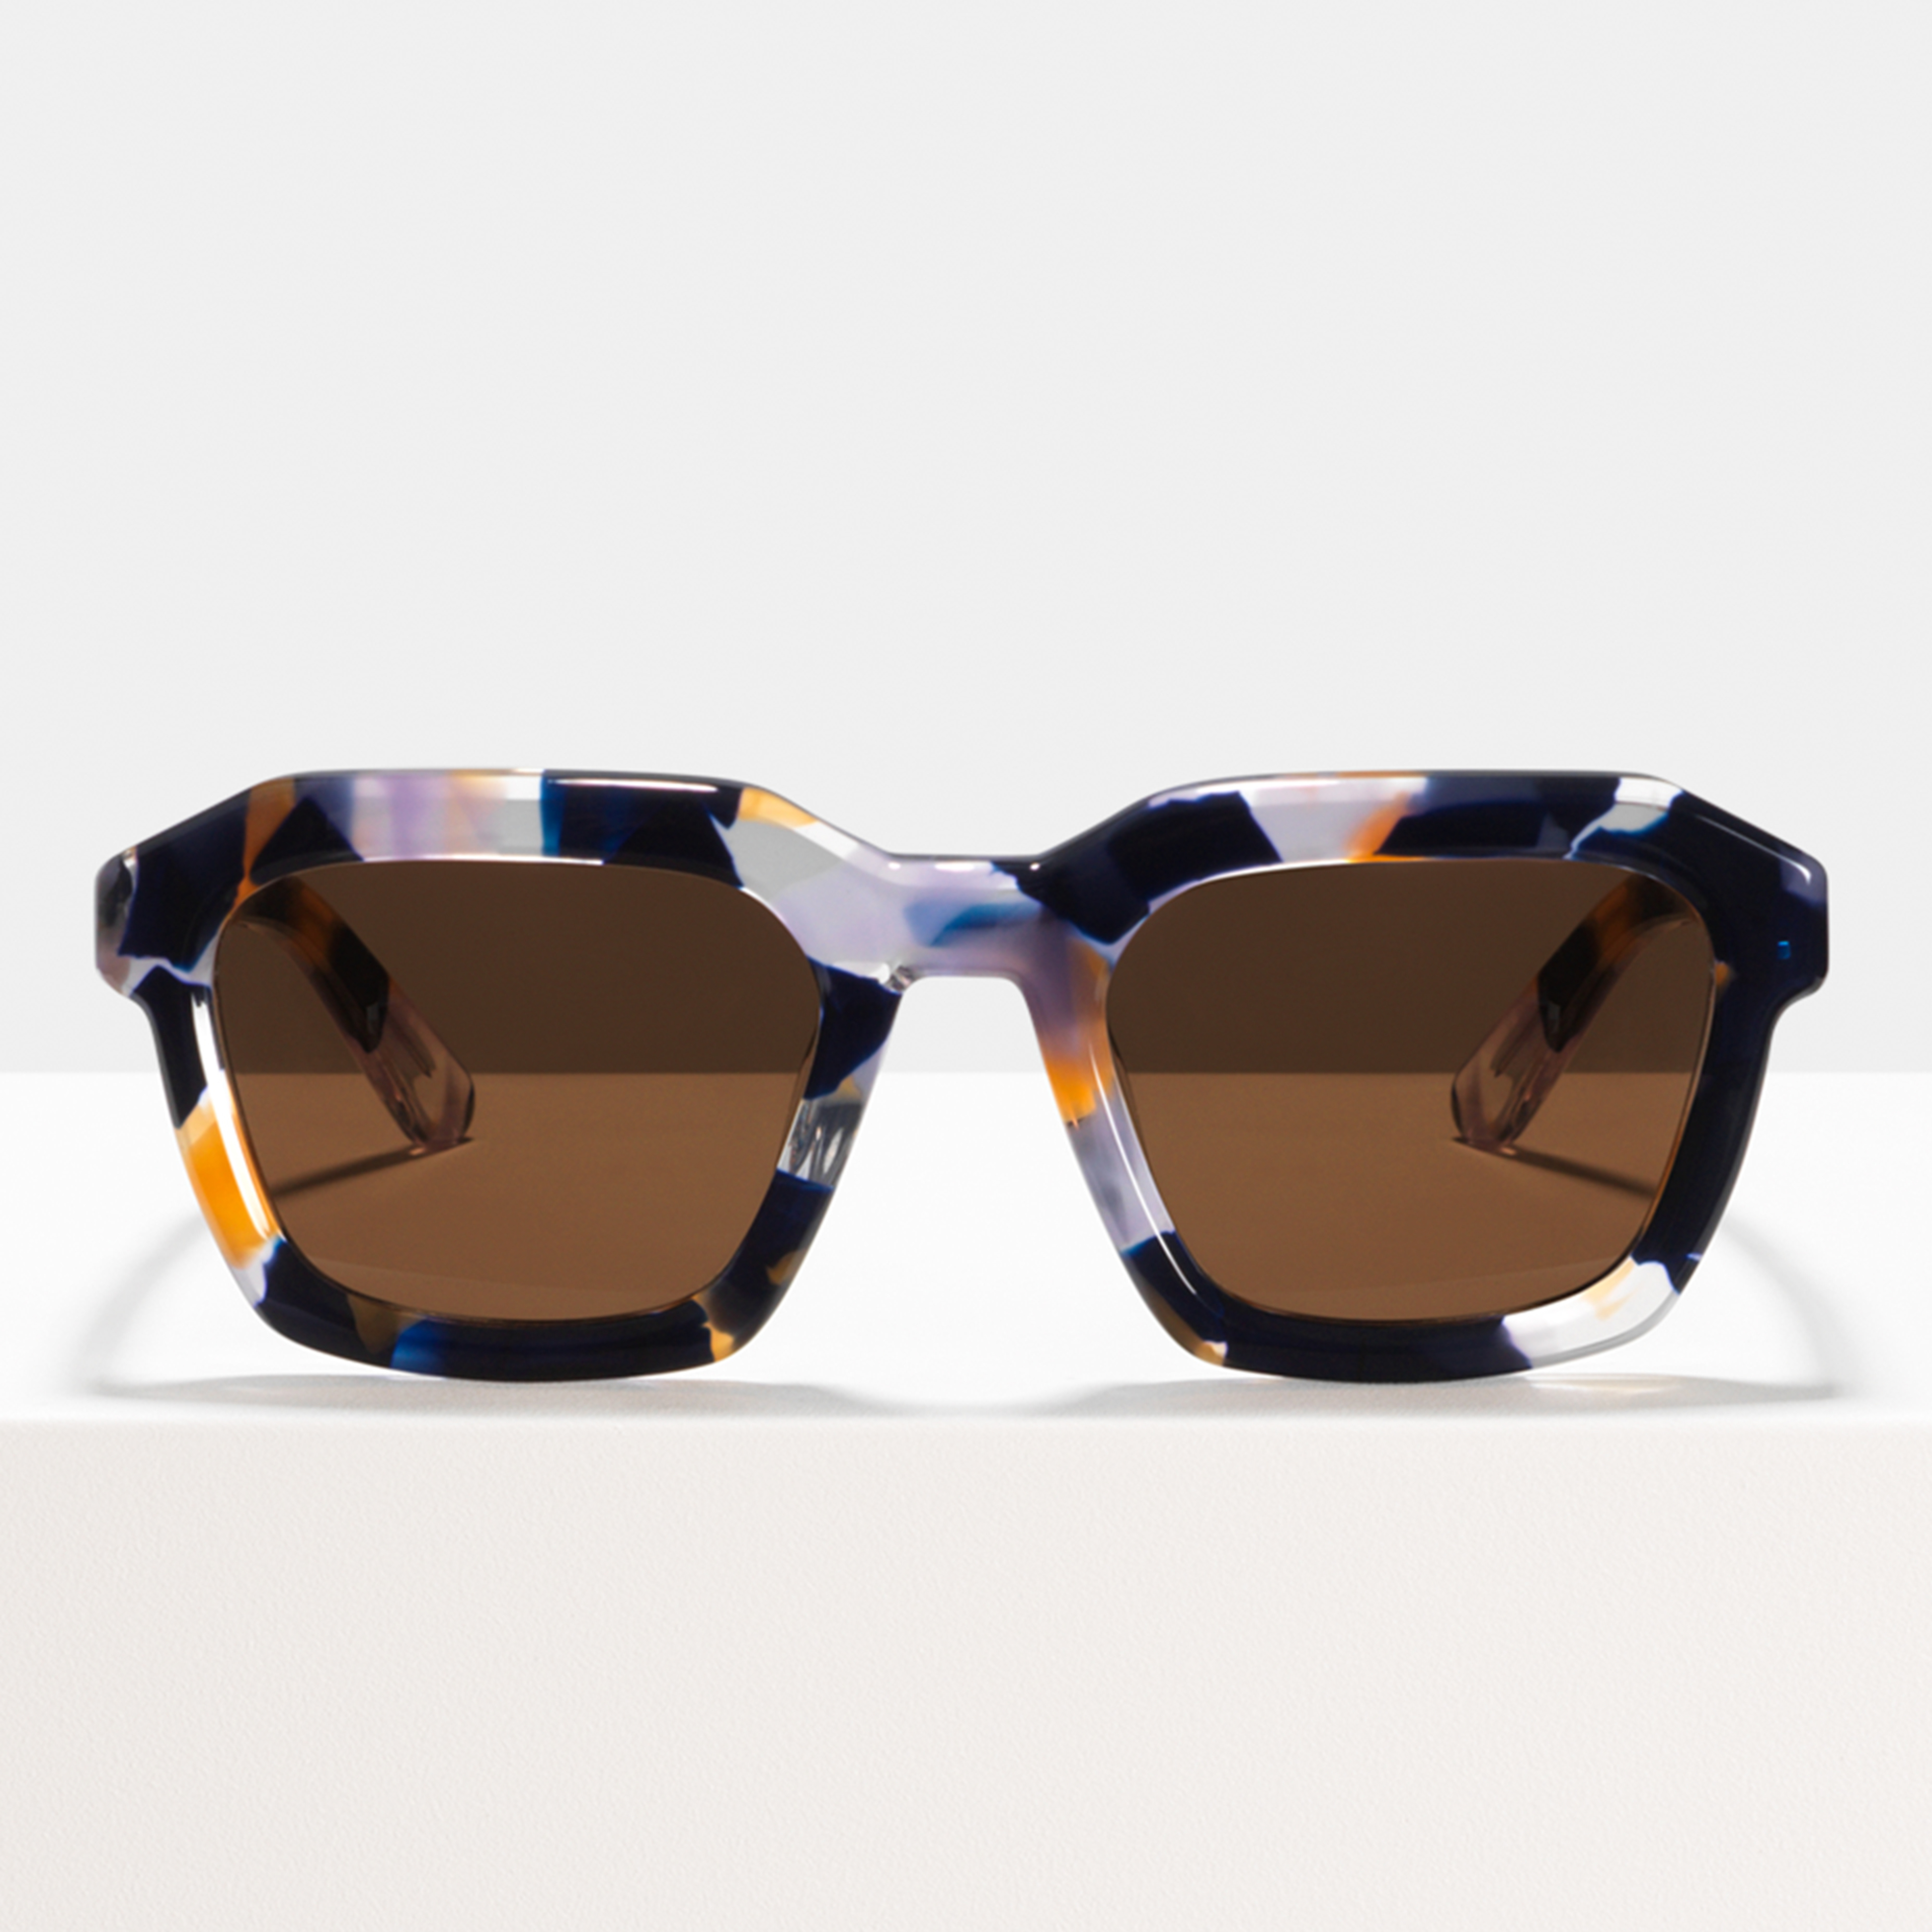 Ace & Tate Gafas de sol | cuadrada Acetato in Marrón, Naranja, Morado